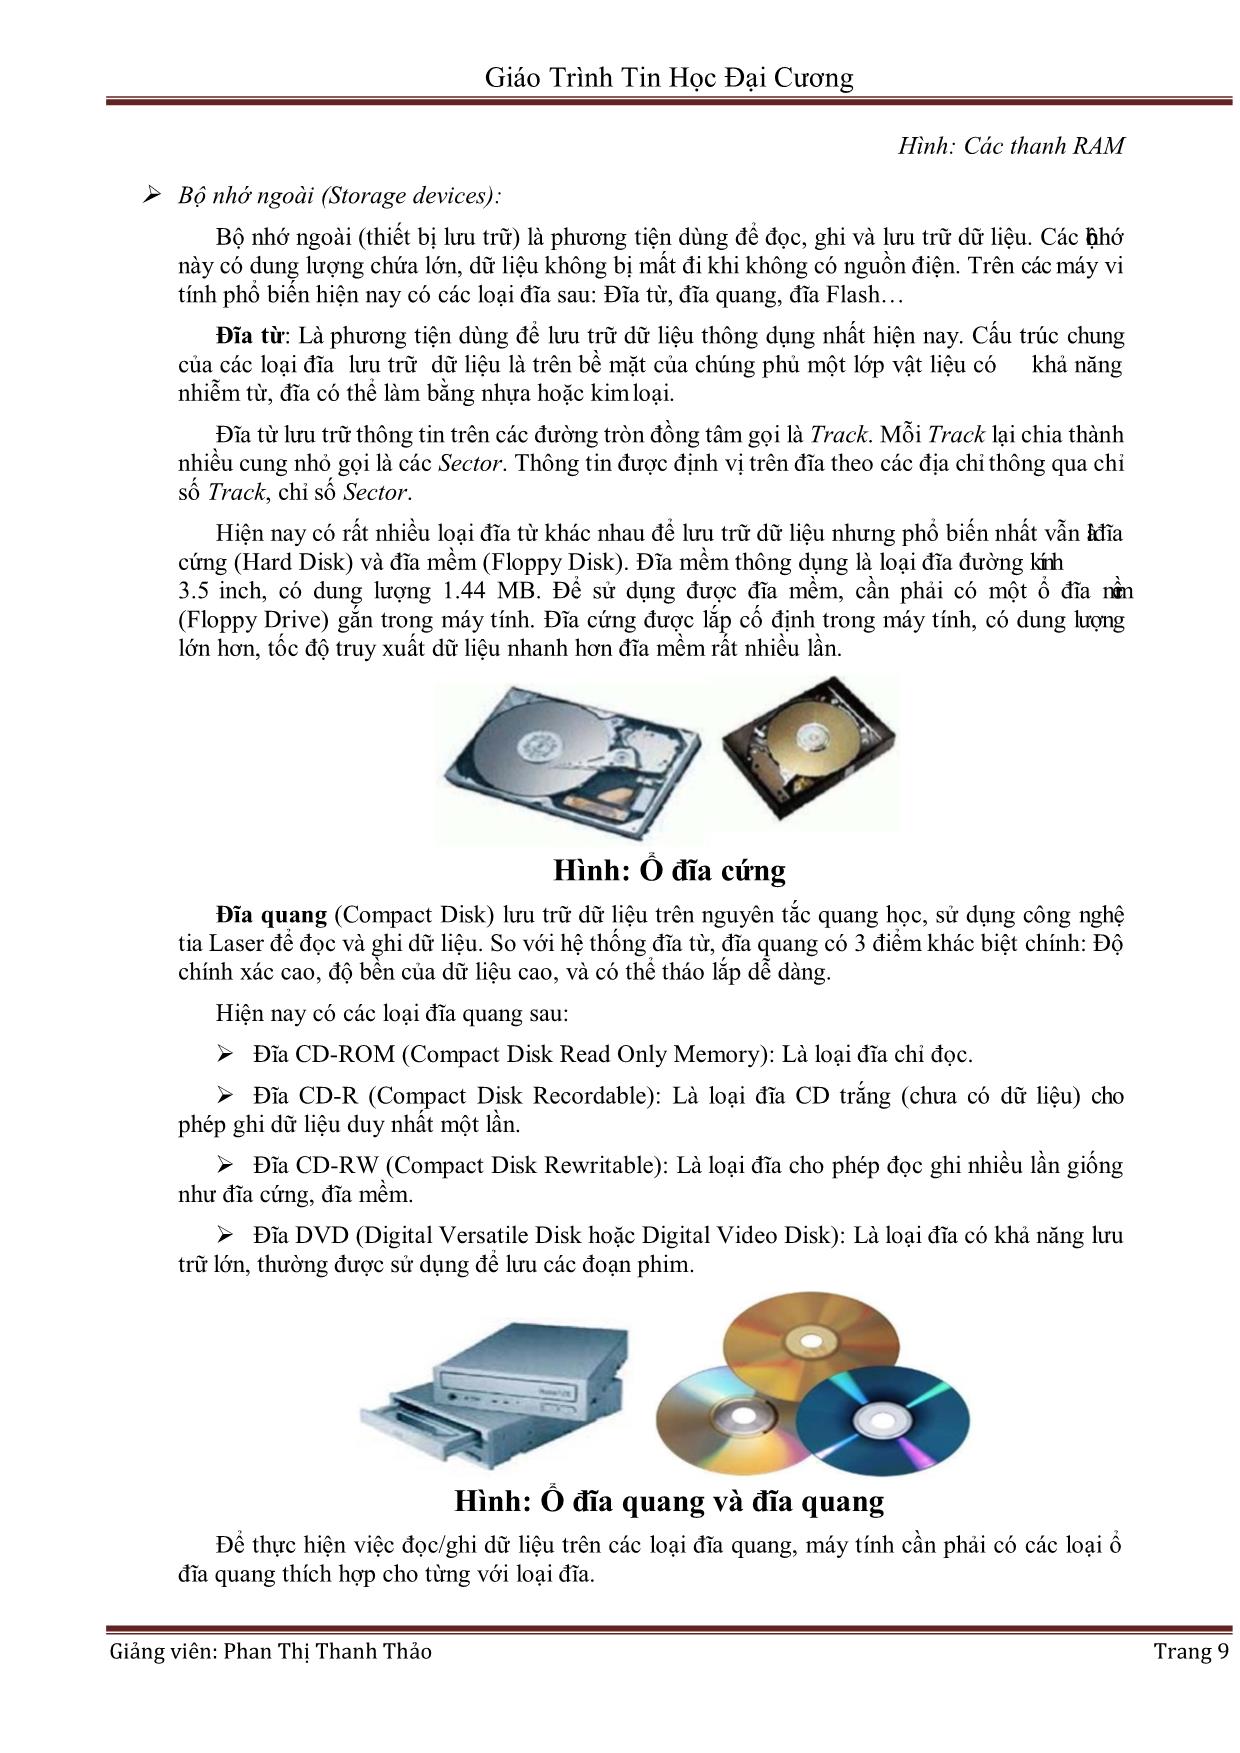 Giáo trình Tin học đại cương (Phần 1) - Phan Thị Thanh Thảo trang 9